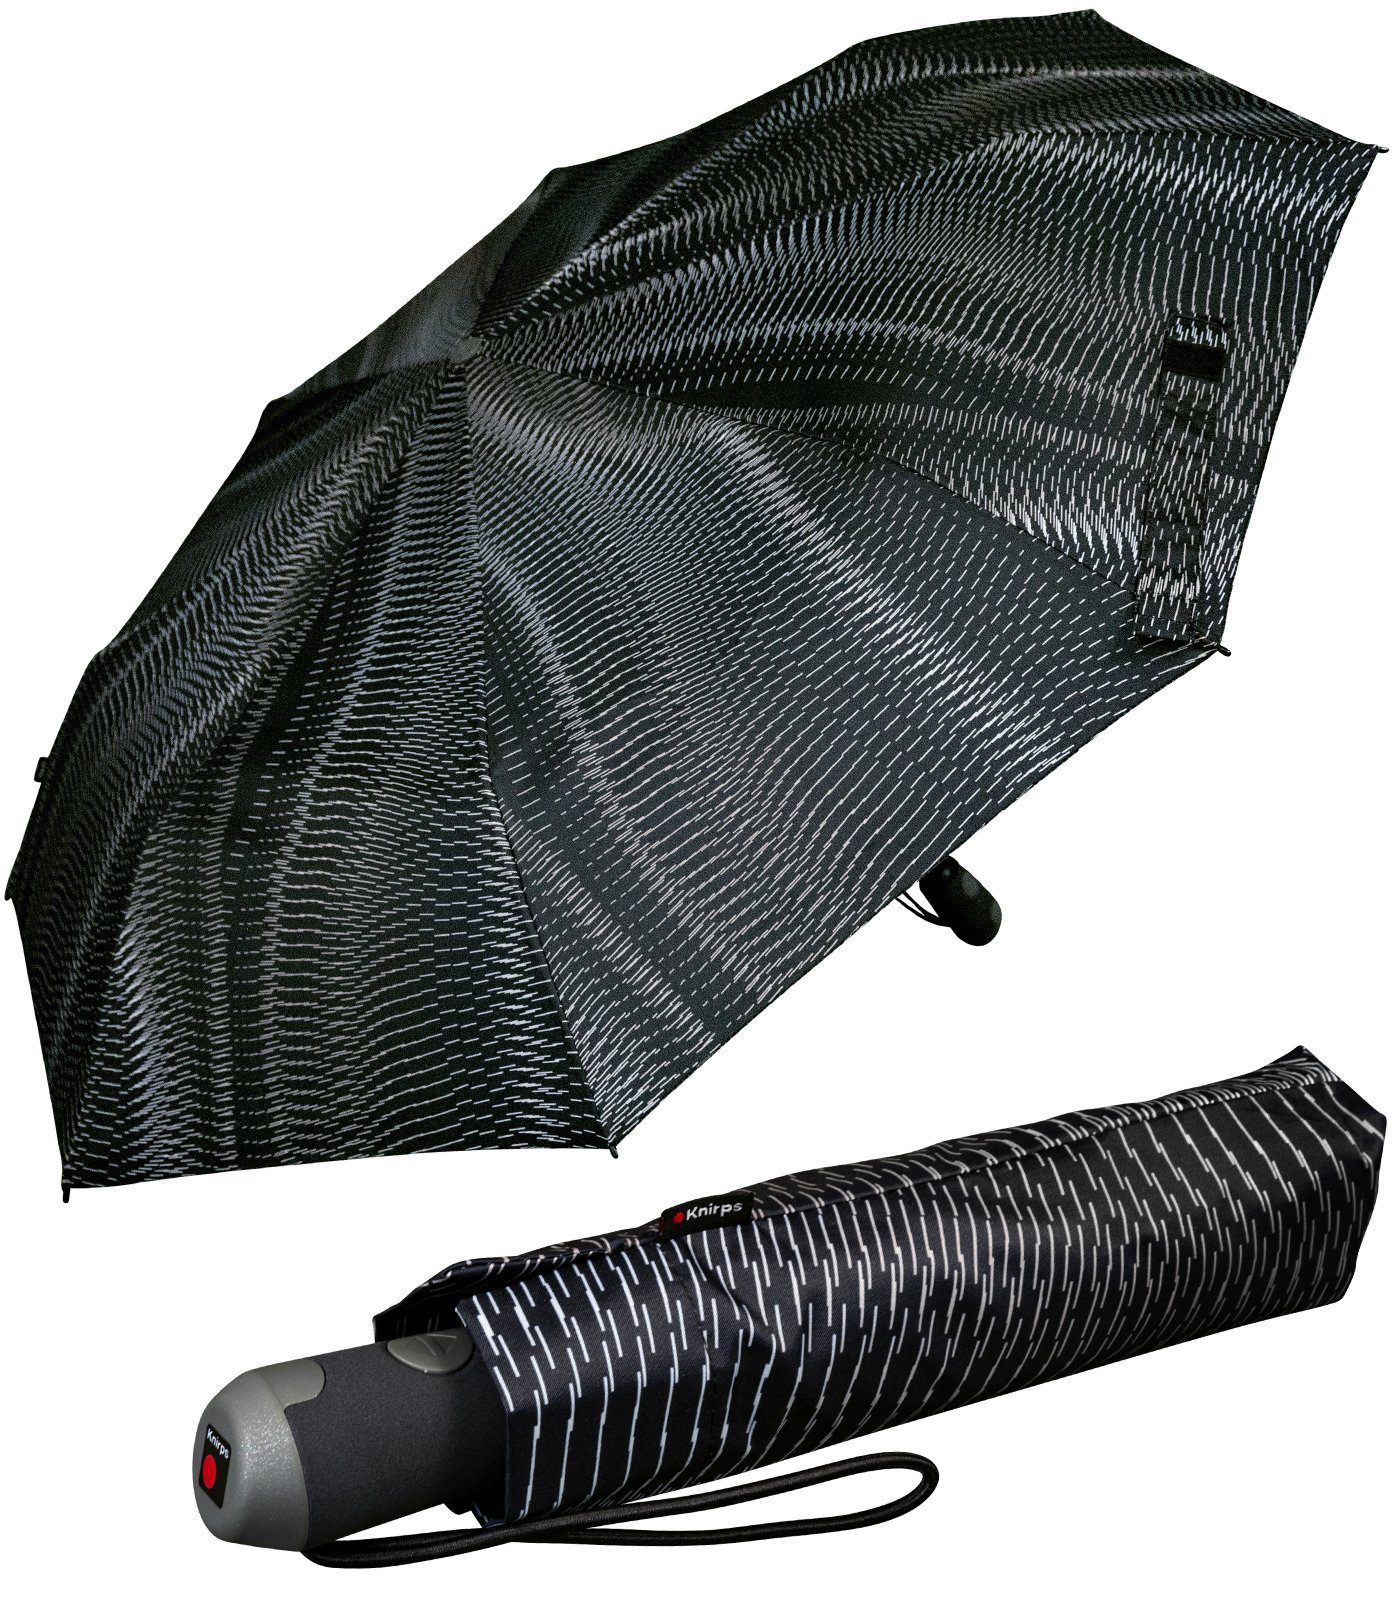 Taschenregenschirm Schirm Knirps® Damen E.200 mit Linien-Muster Duomatic Auf-Zu-Automatik, - Sound mit schwarz-beige moon